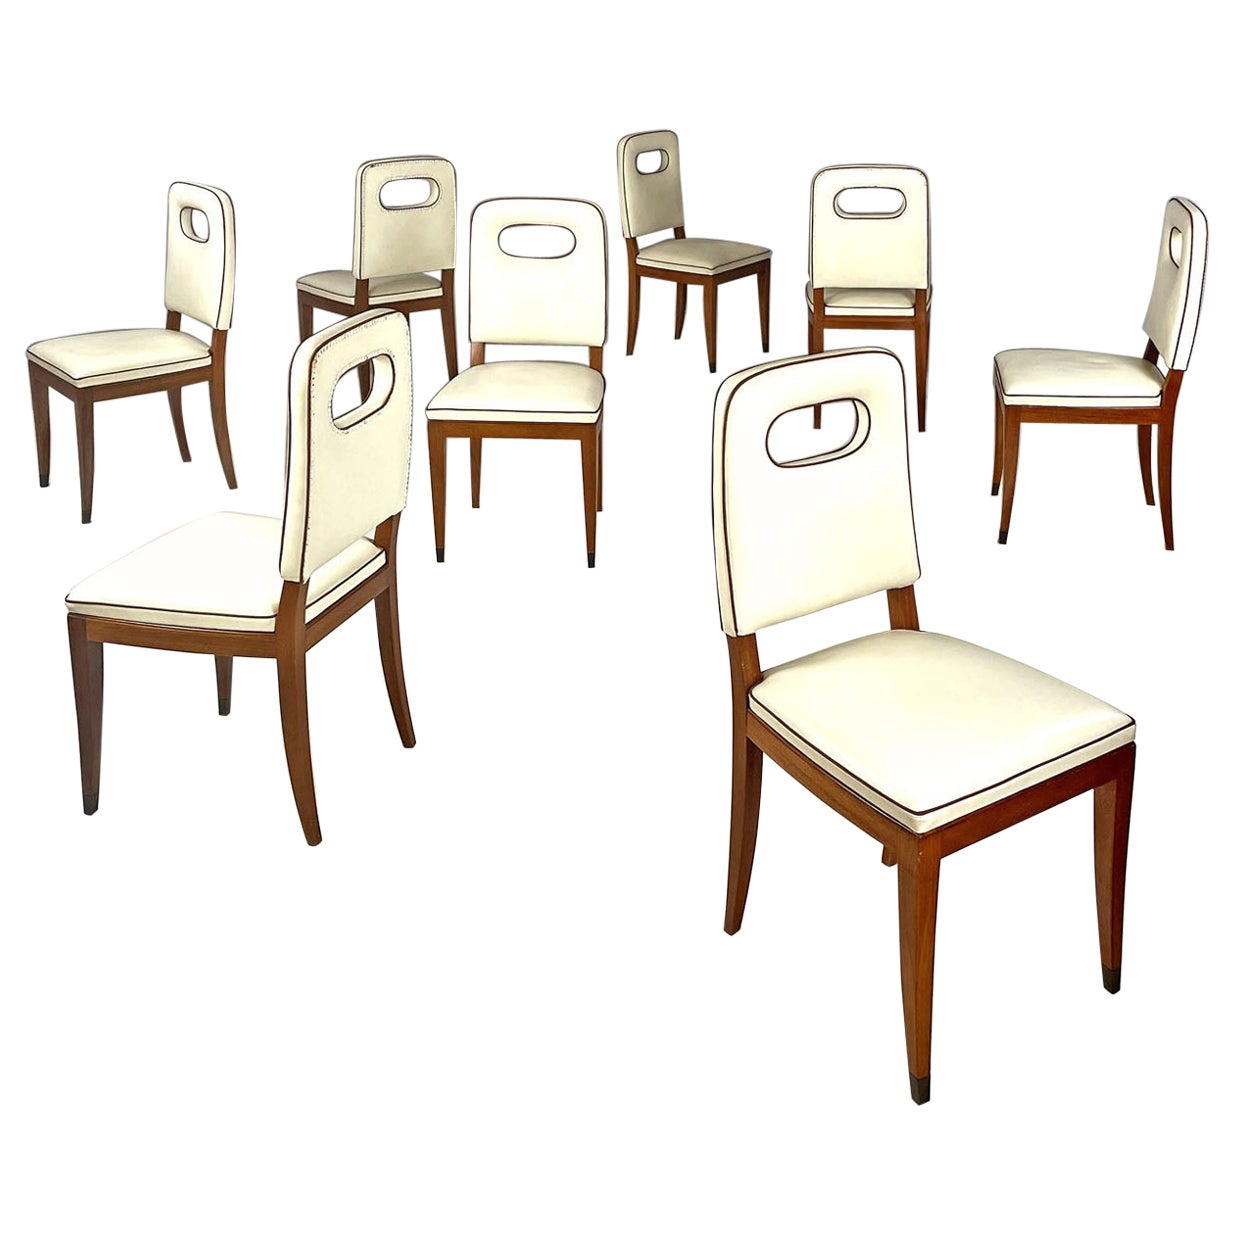 Italienische Stühle aus weißem Leder und Holz im Art déco-Stil von Giovanni Gariboldi, 1940er Jahre